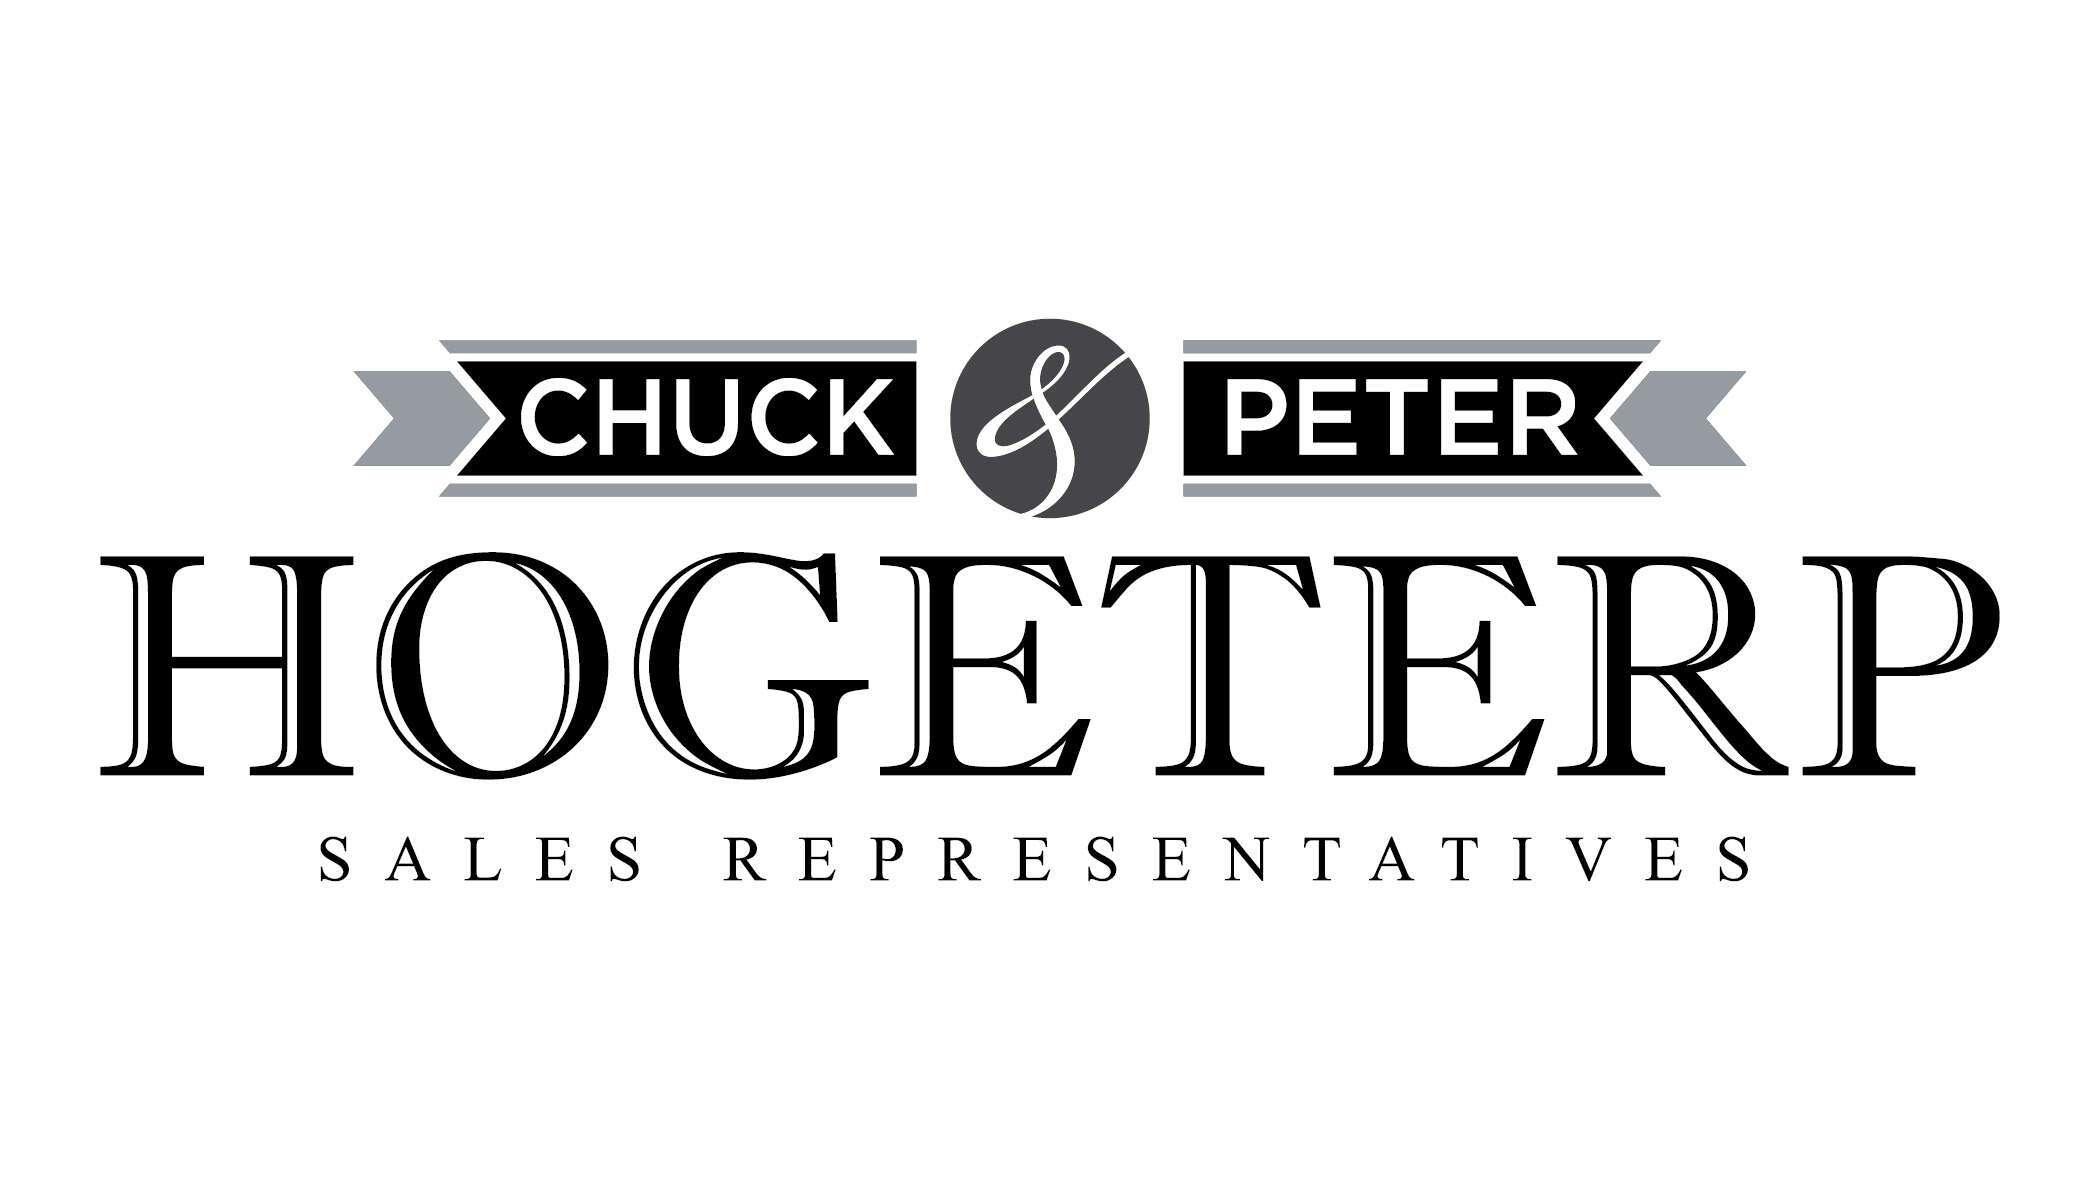 Chuck & Peter Hogeterp Sales Representiatives